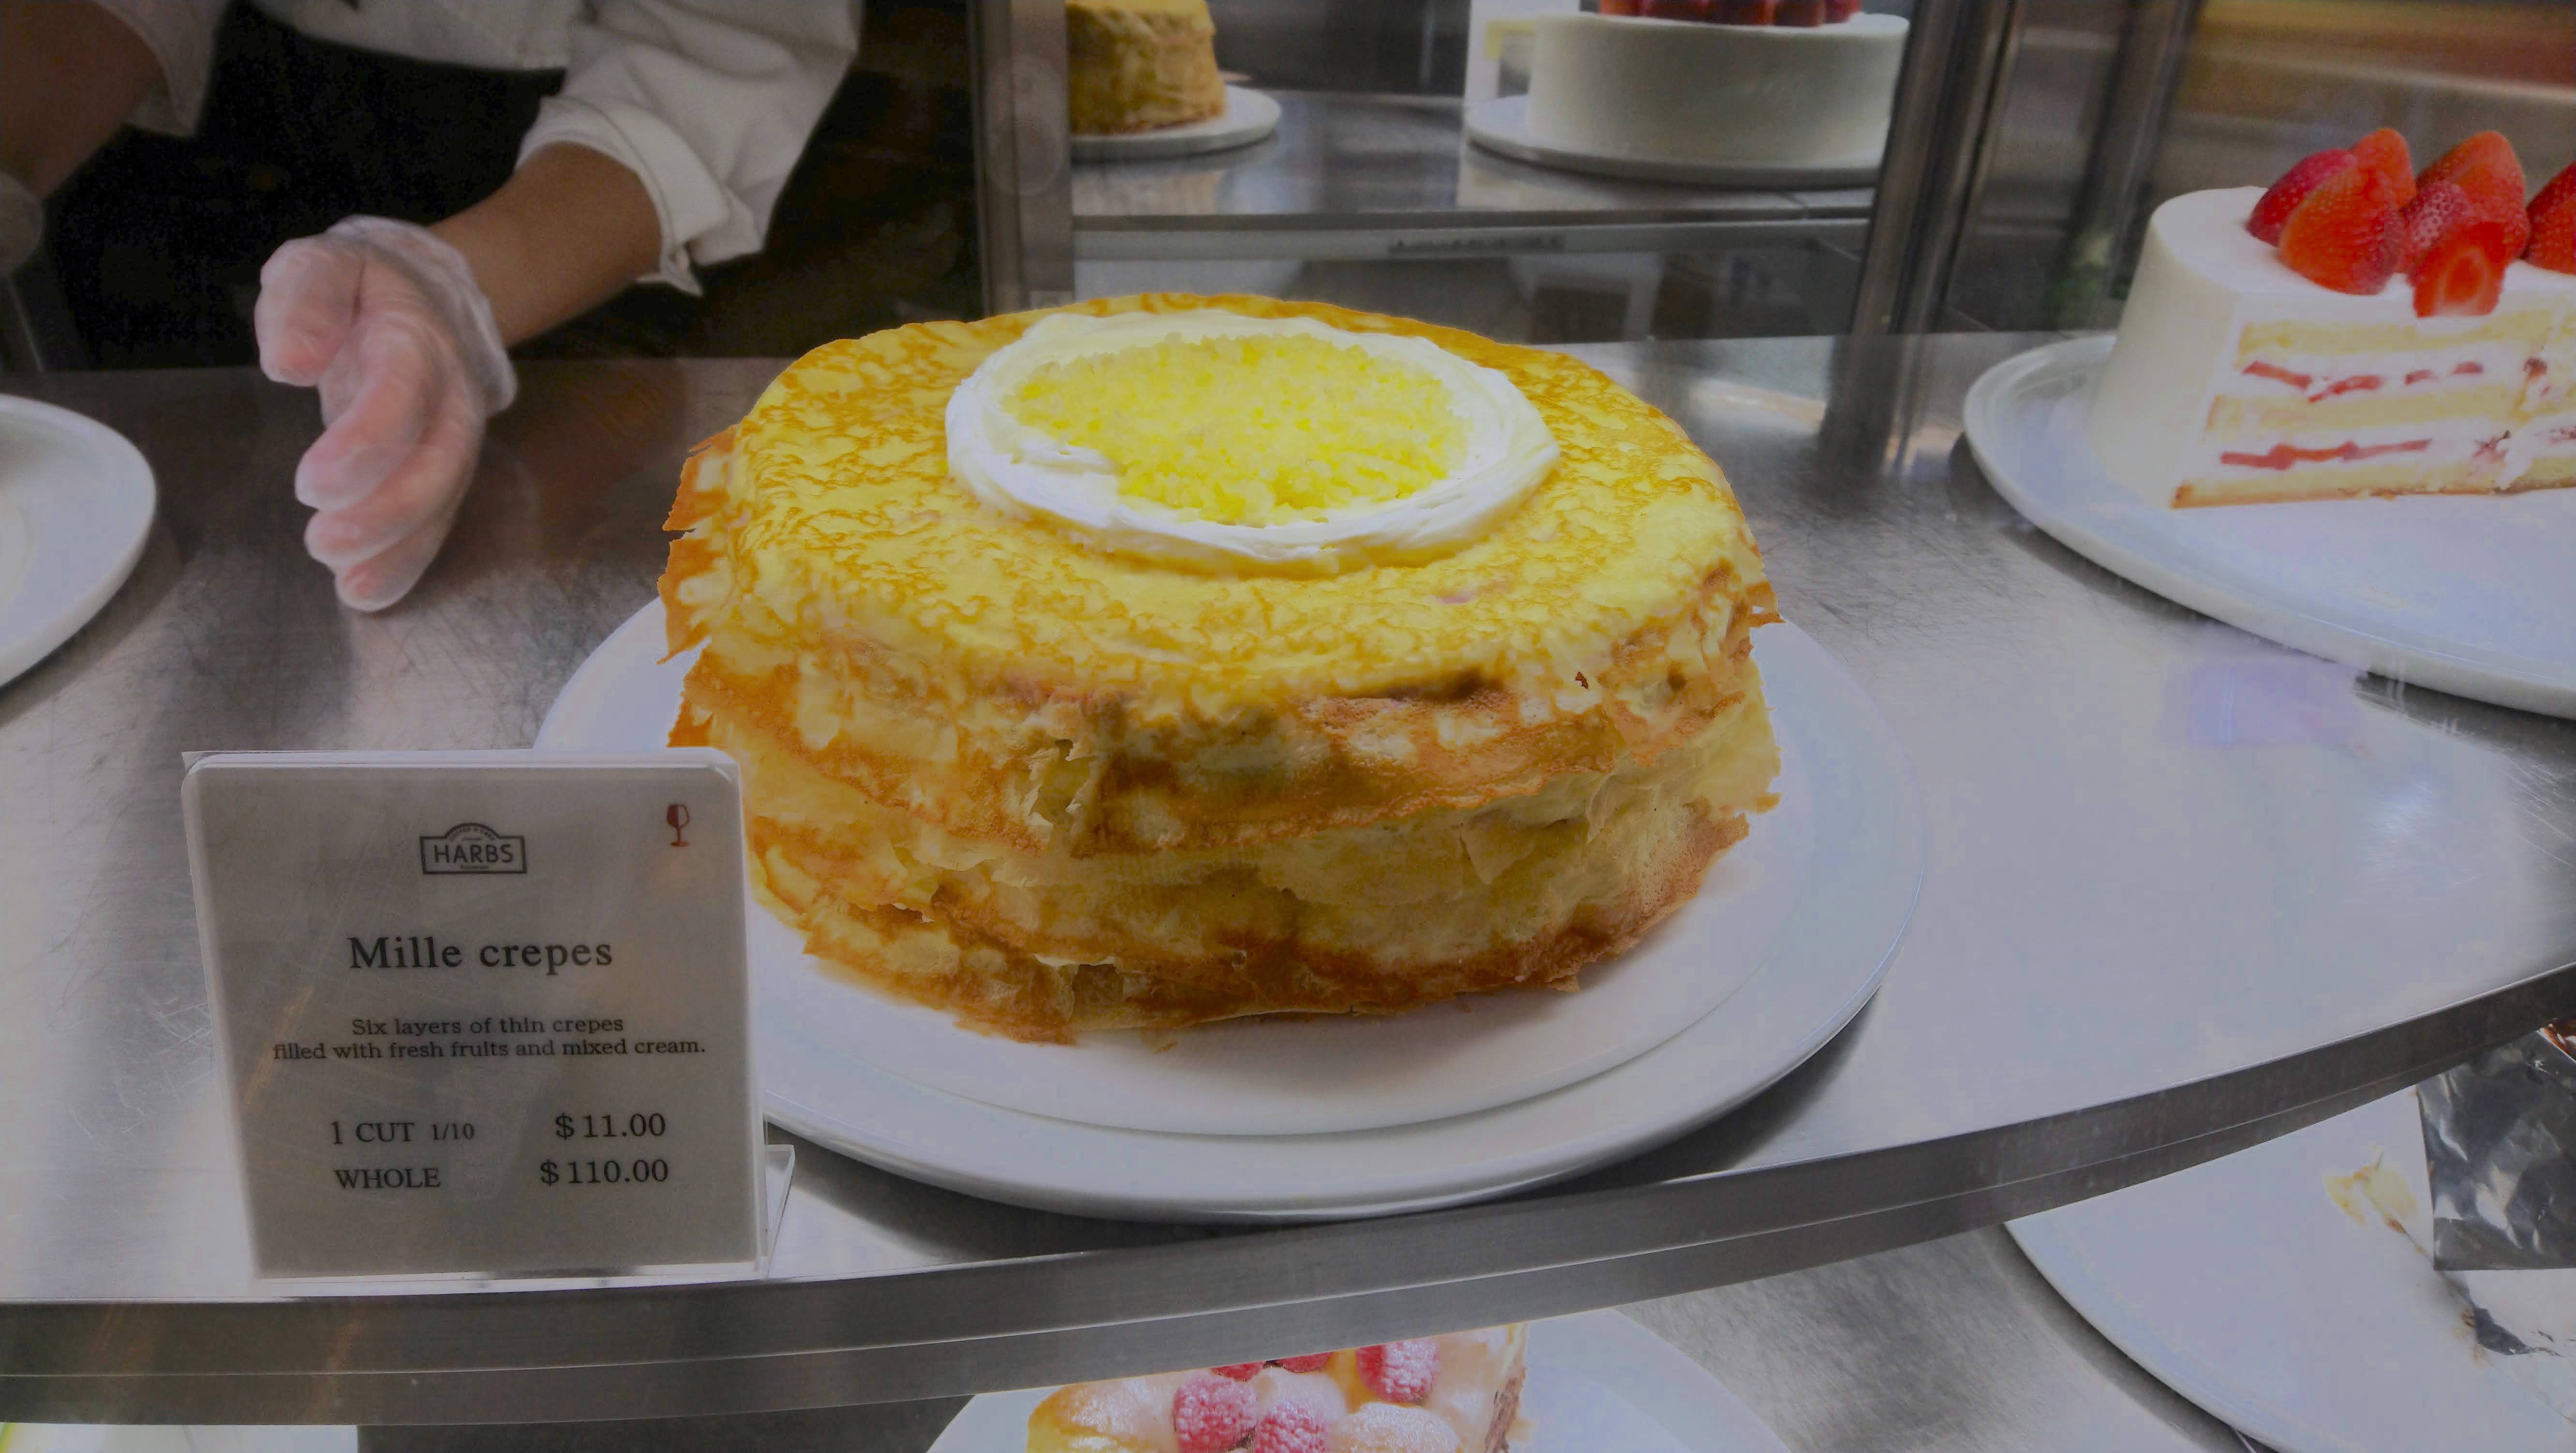 日系ケーキ店 Harbs が再開 マンハッタンの2店舗で ニューヨーク便利帳